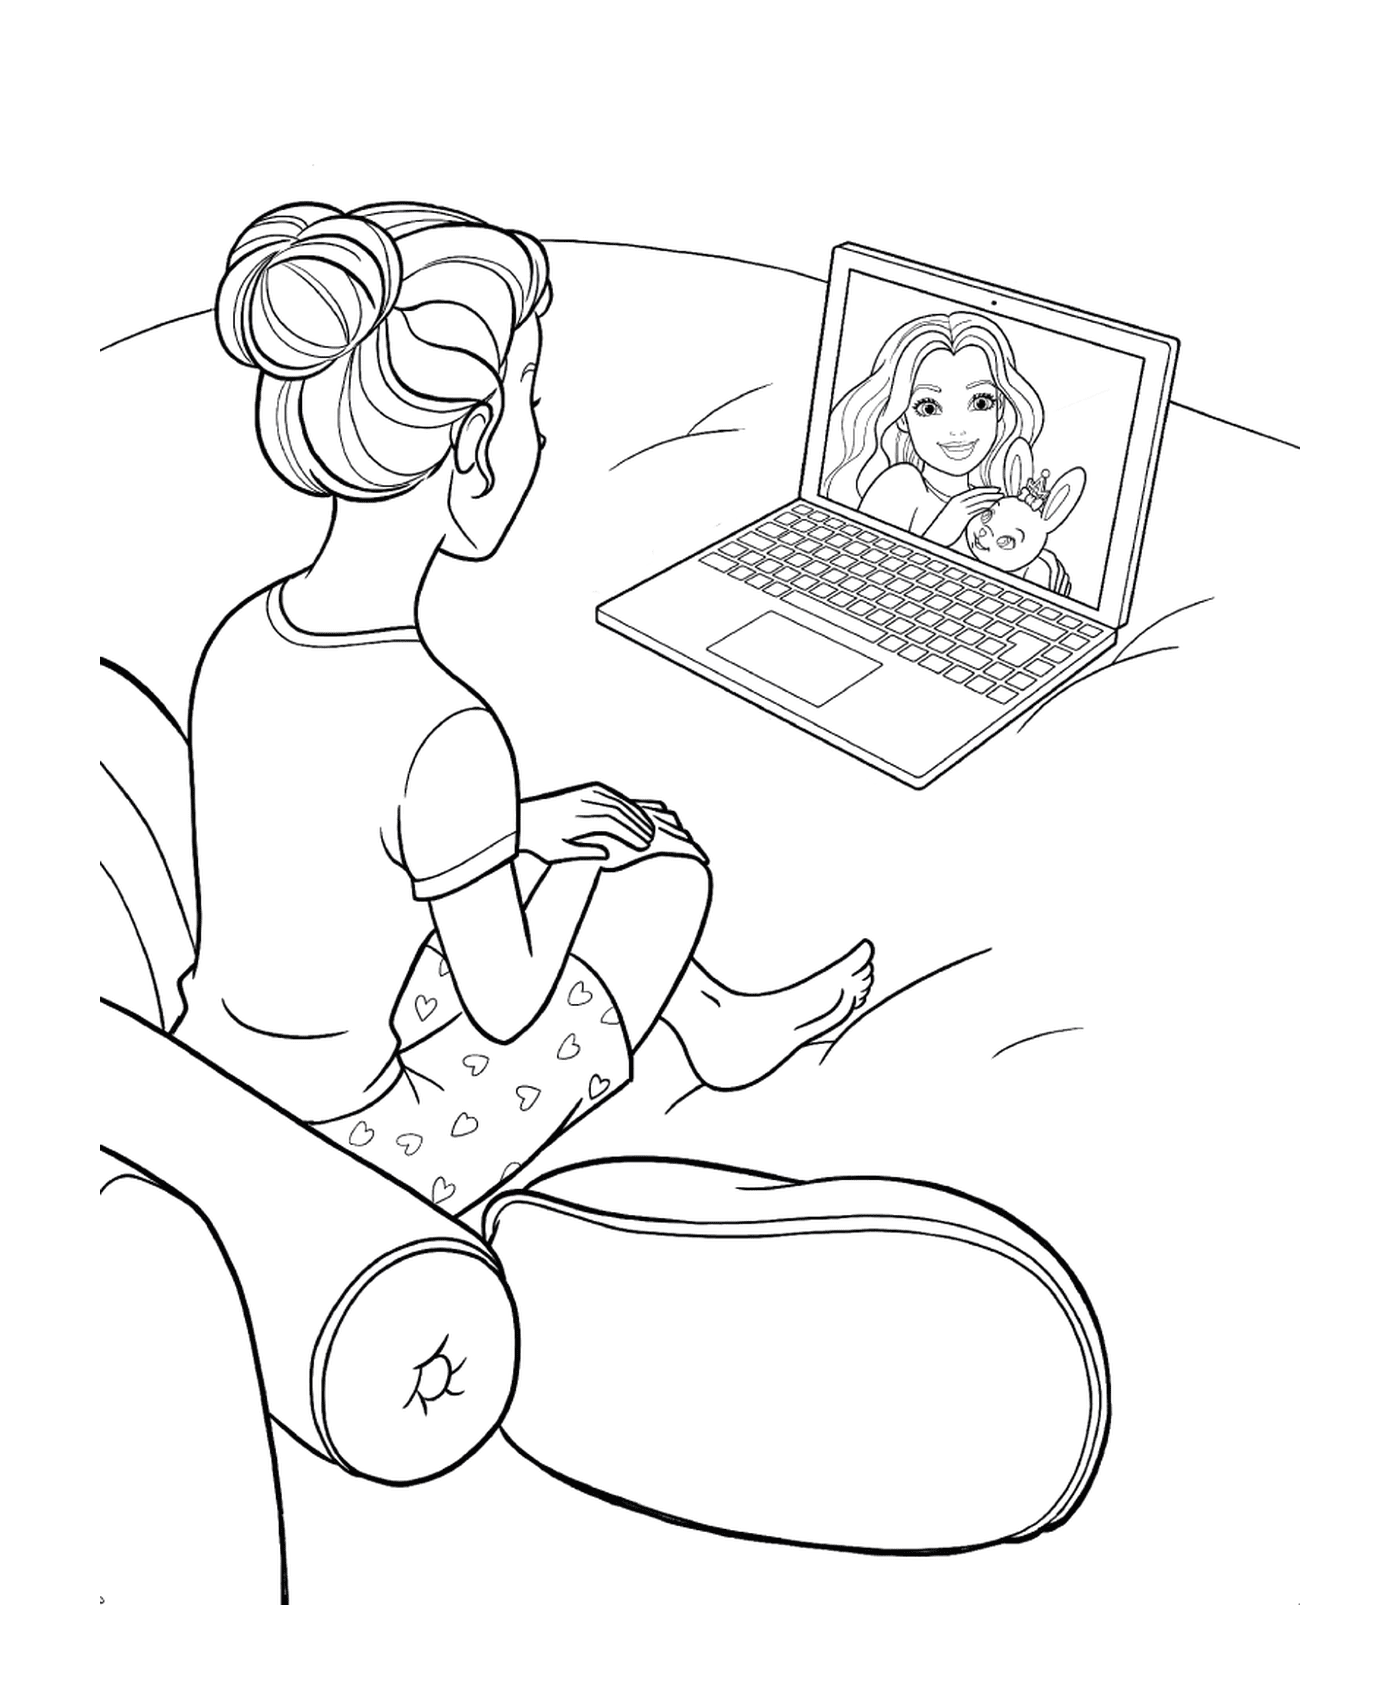  Una donna seduta davanti a un portatile 